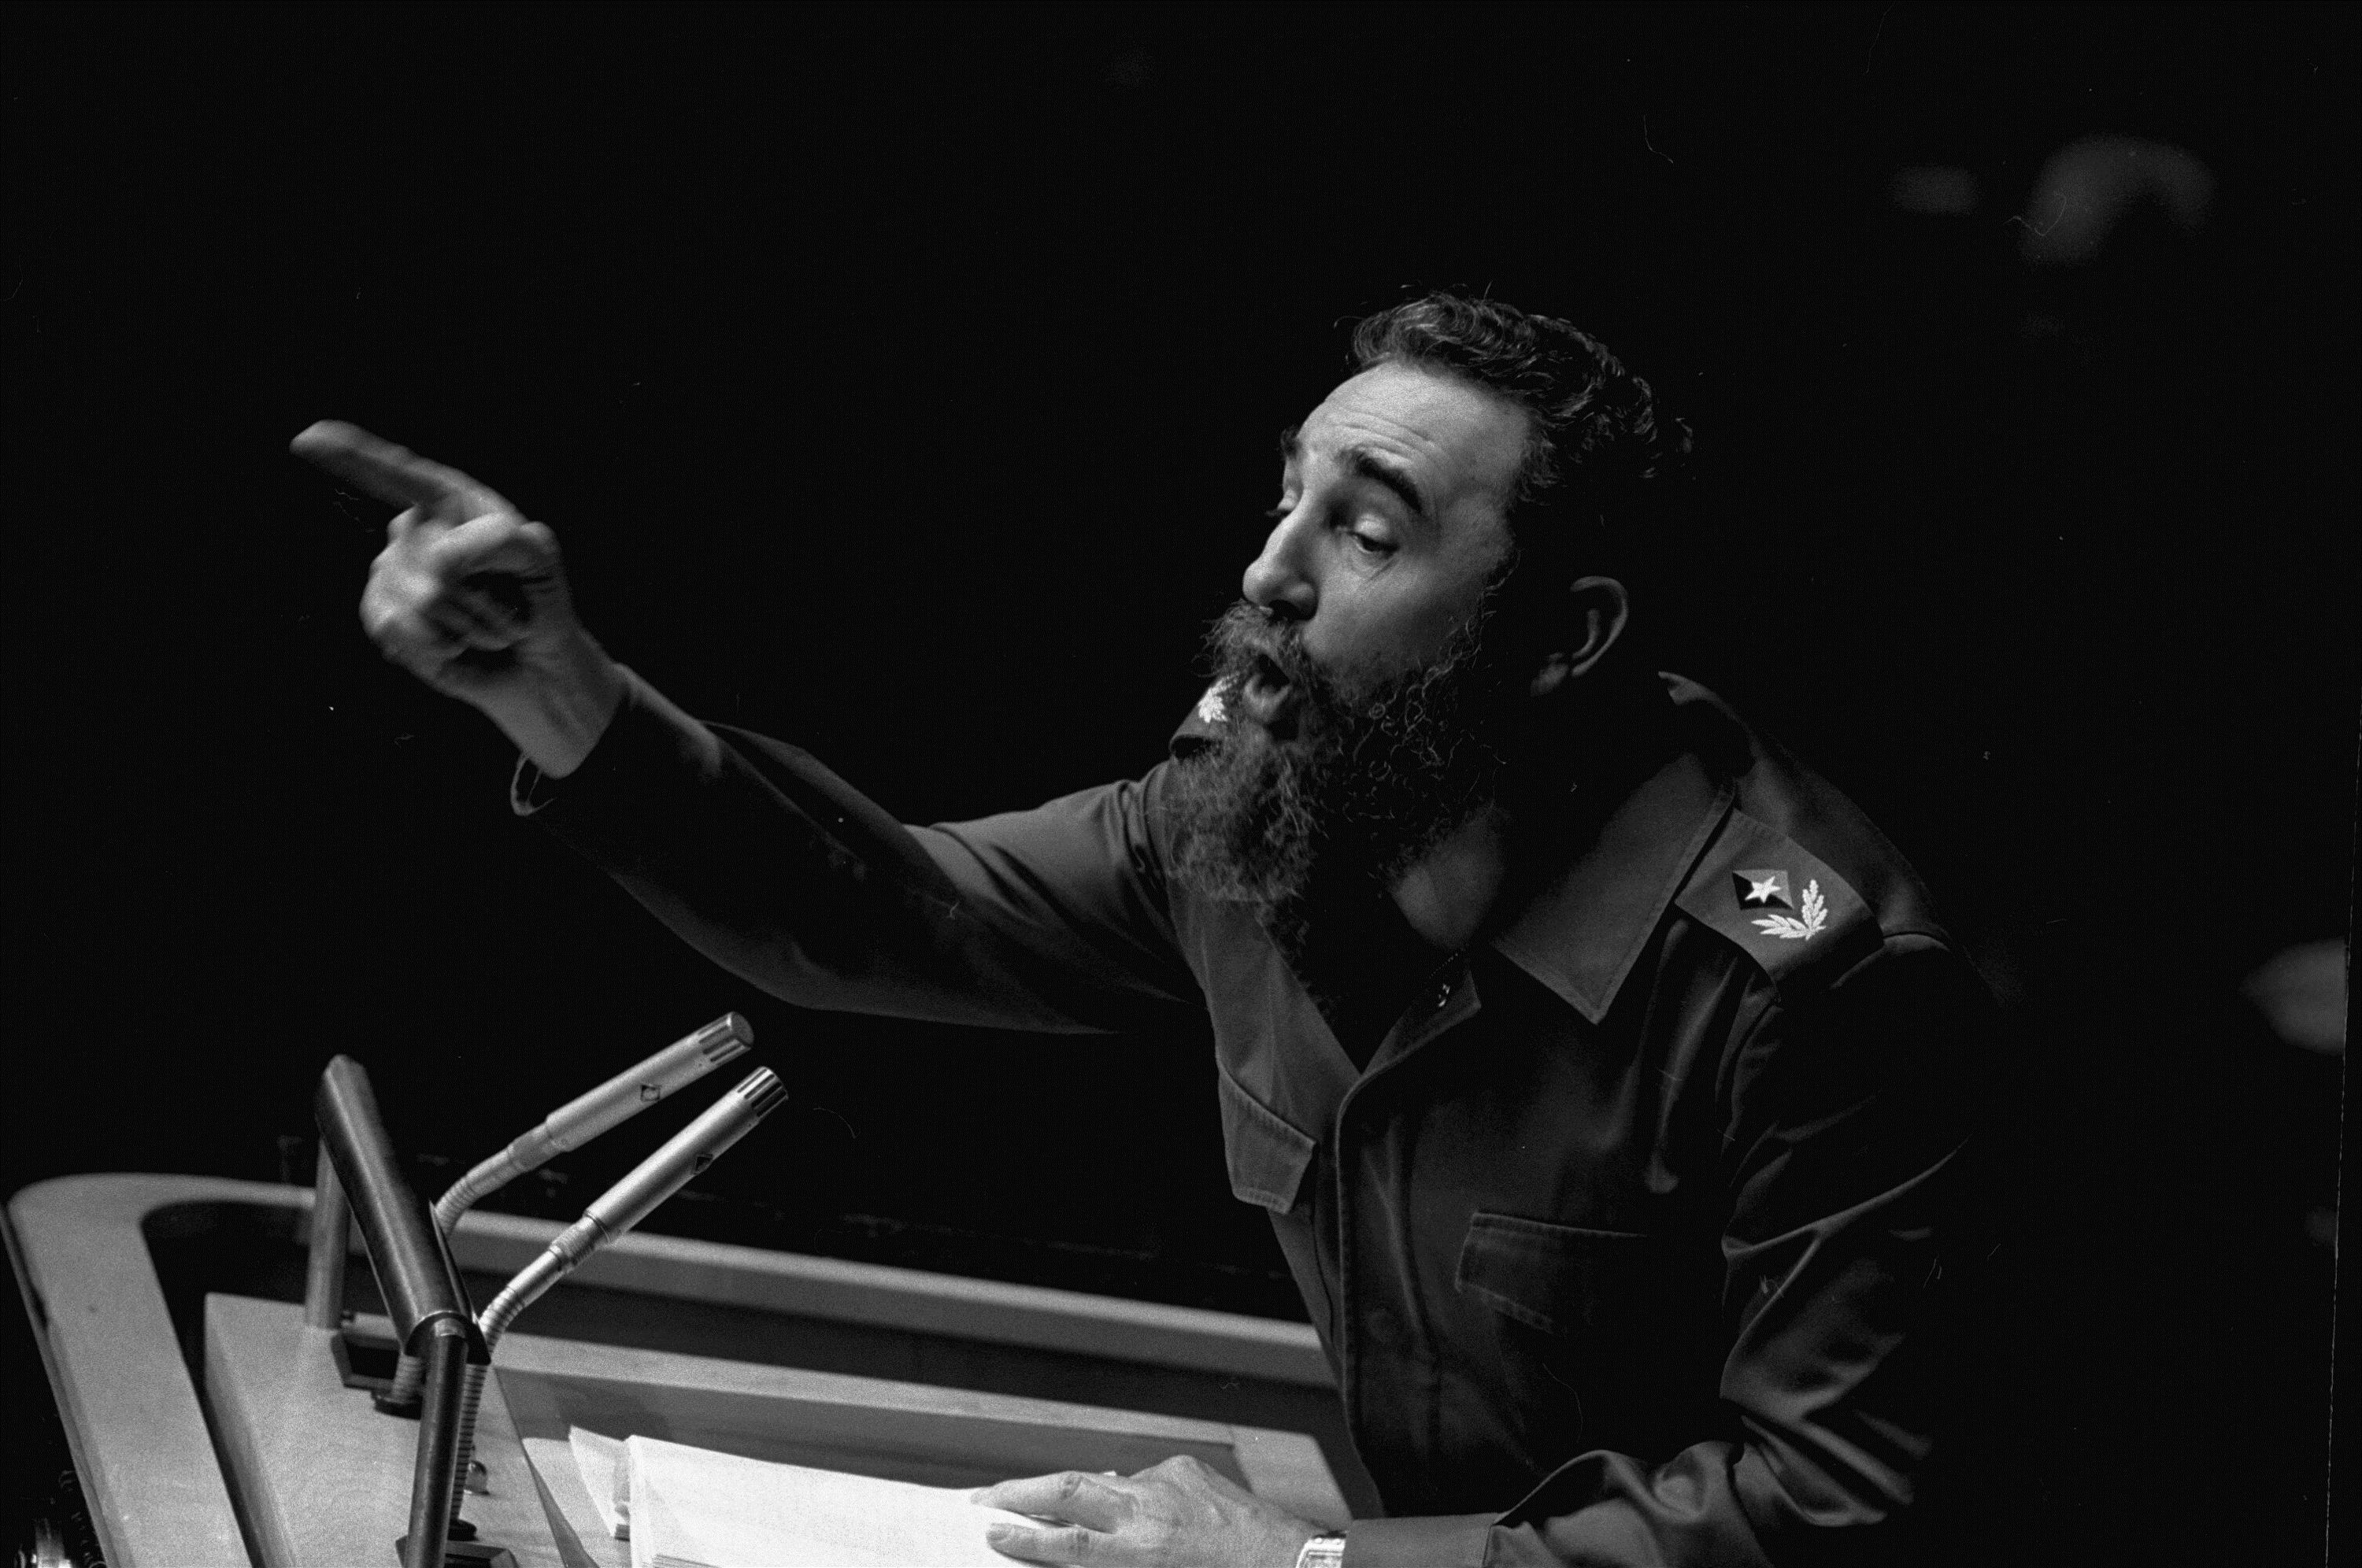 Fidel Castro, Cuba Revolutionary, Dies at 90 - WSJ